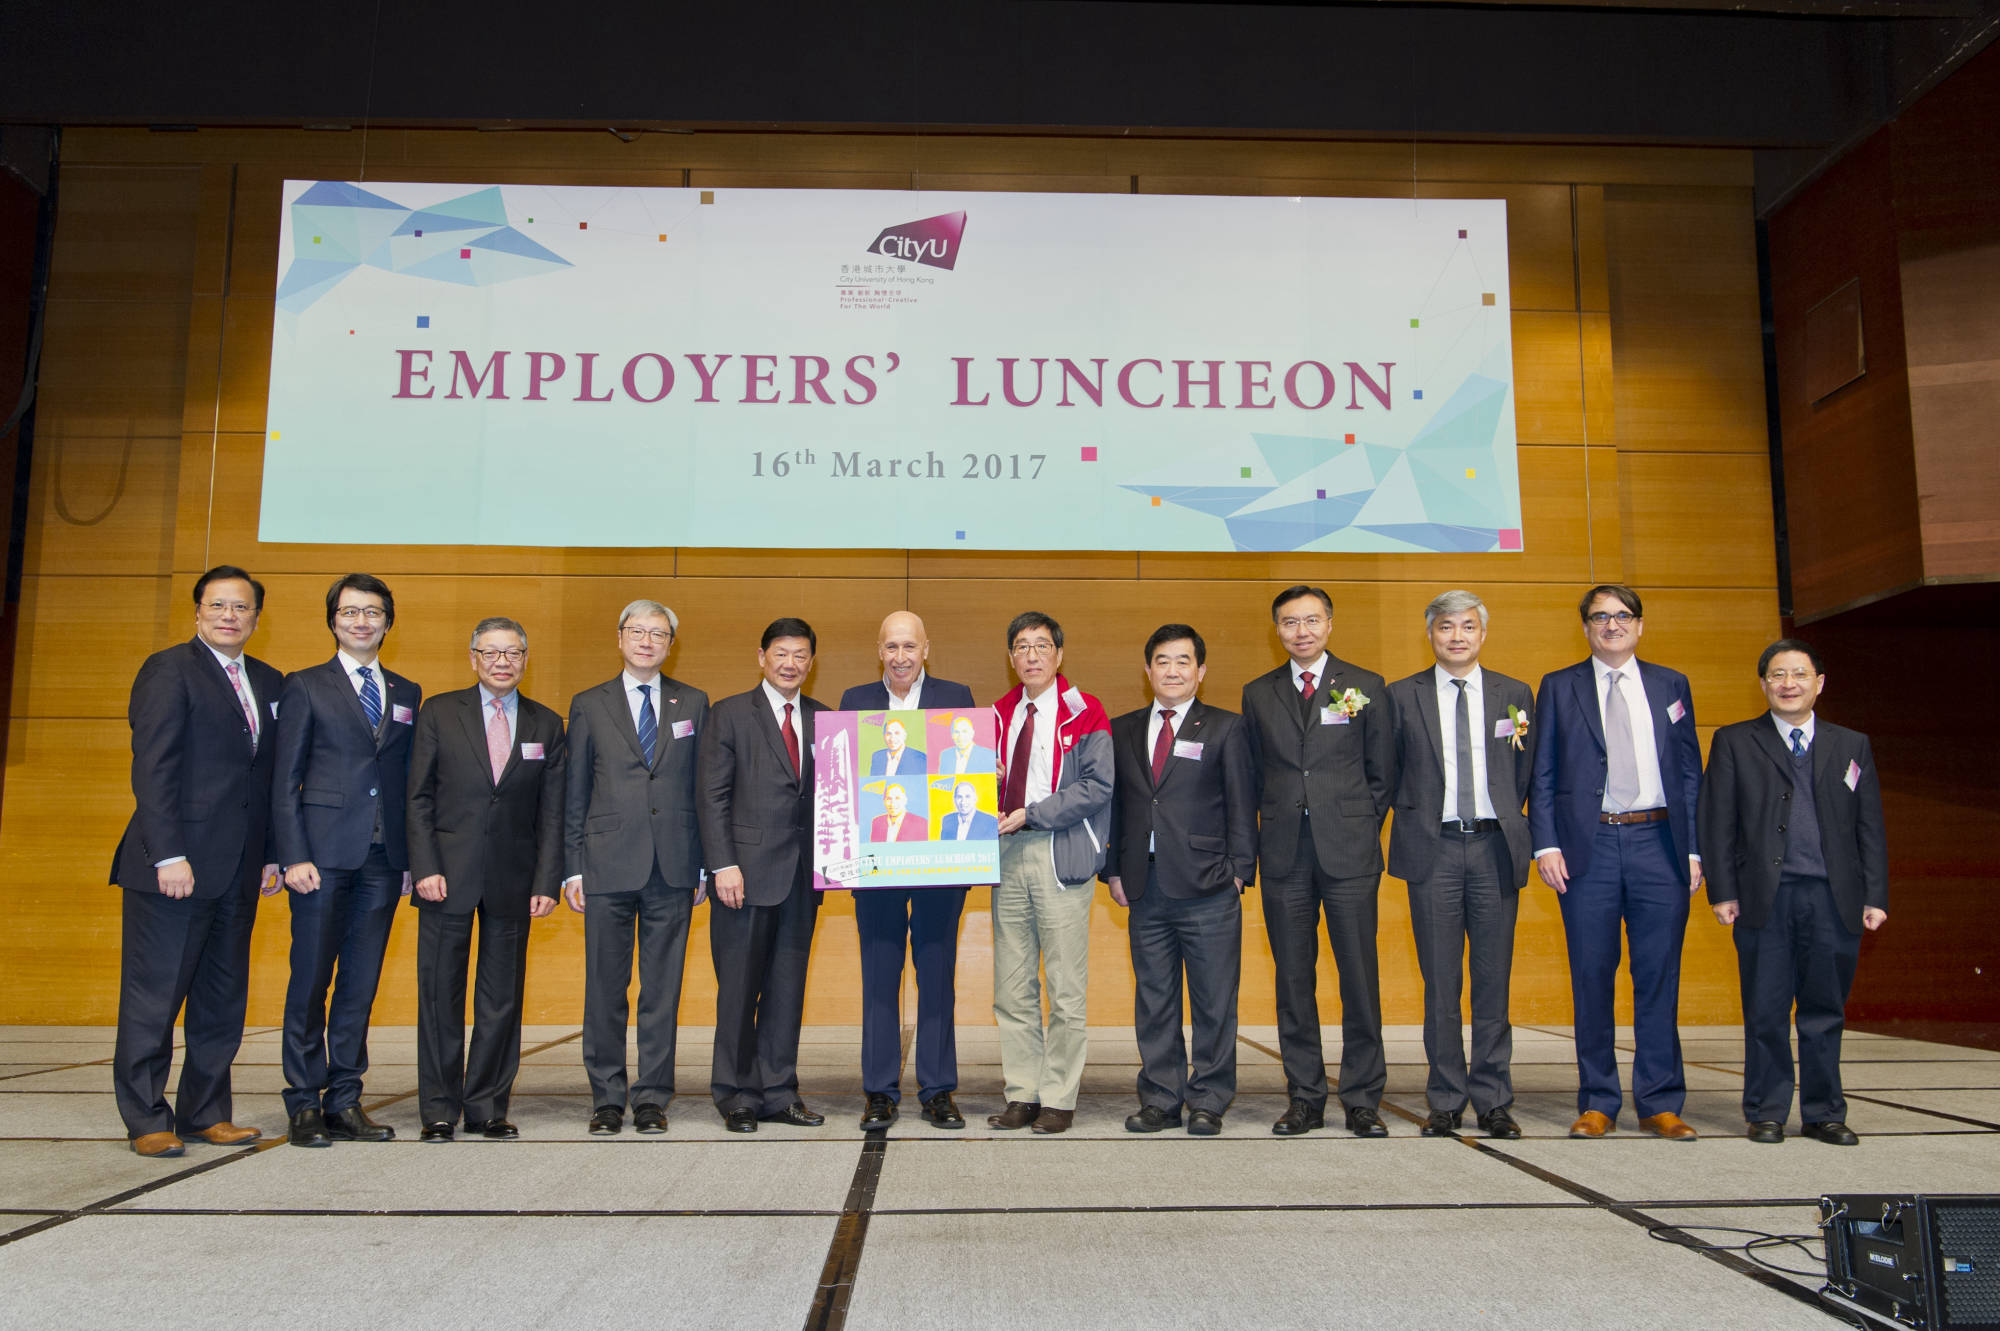 CityU Employers' Luncheon 2017